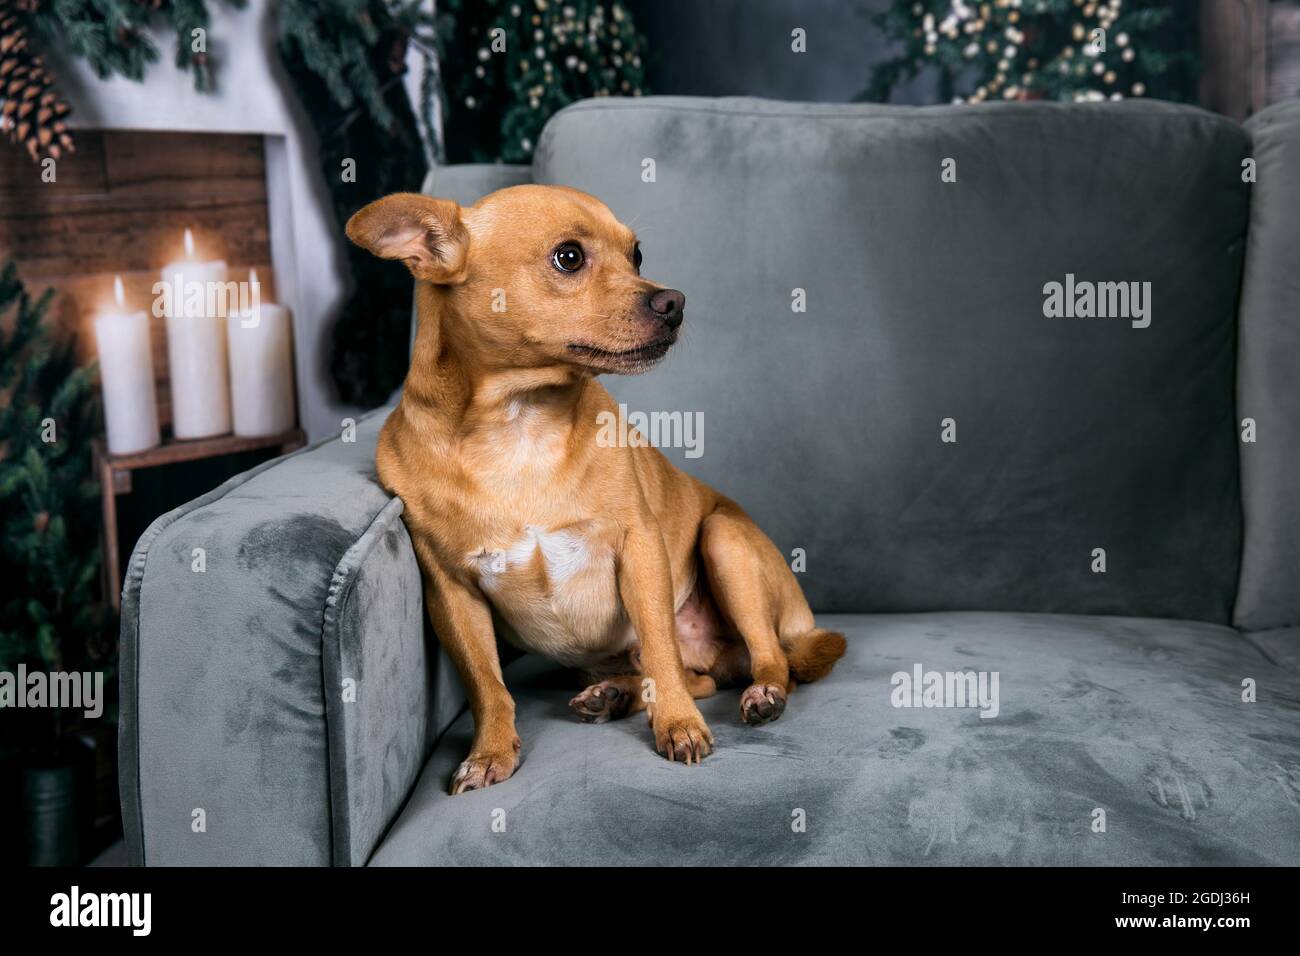 Razza mista chihuahua piccolo cane seduto su un divano grigio a Natale con candele incandescenti e le luci dell'albero di Natale incandescente Foto Stock